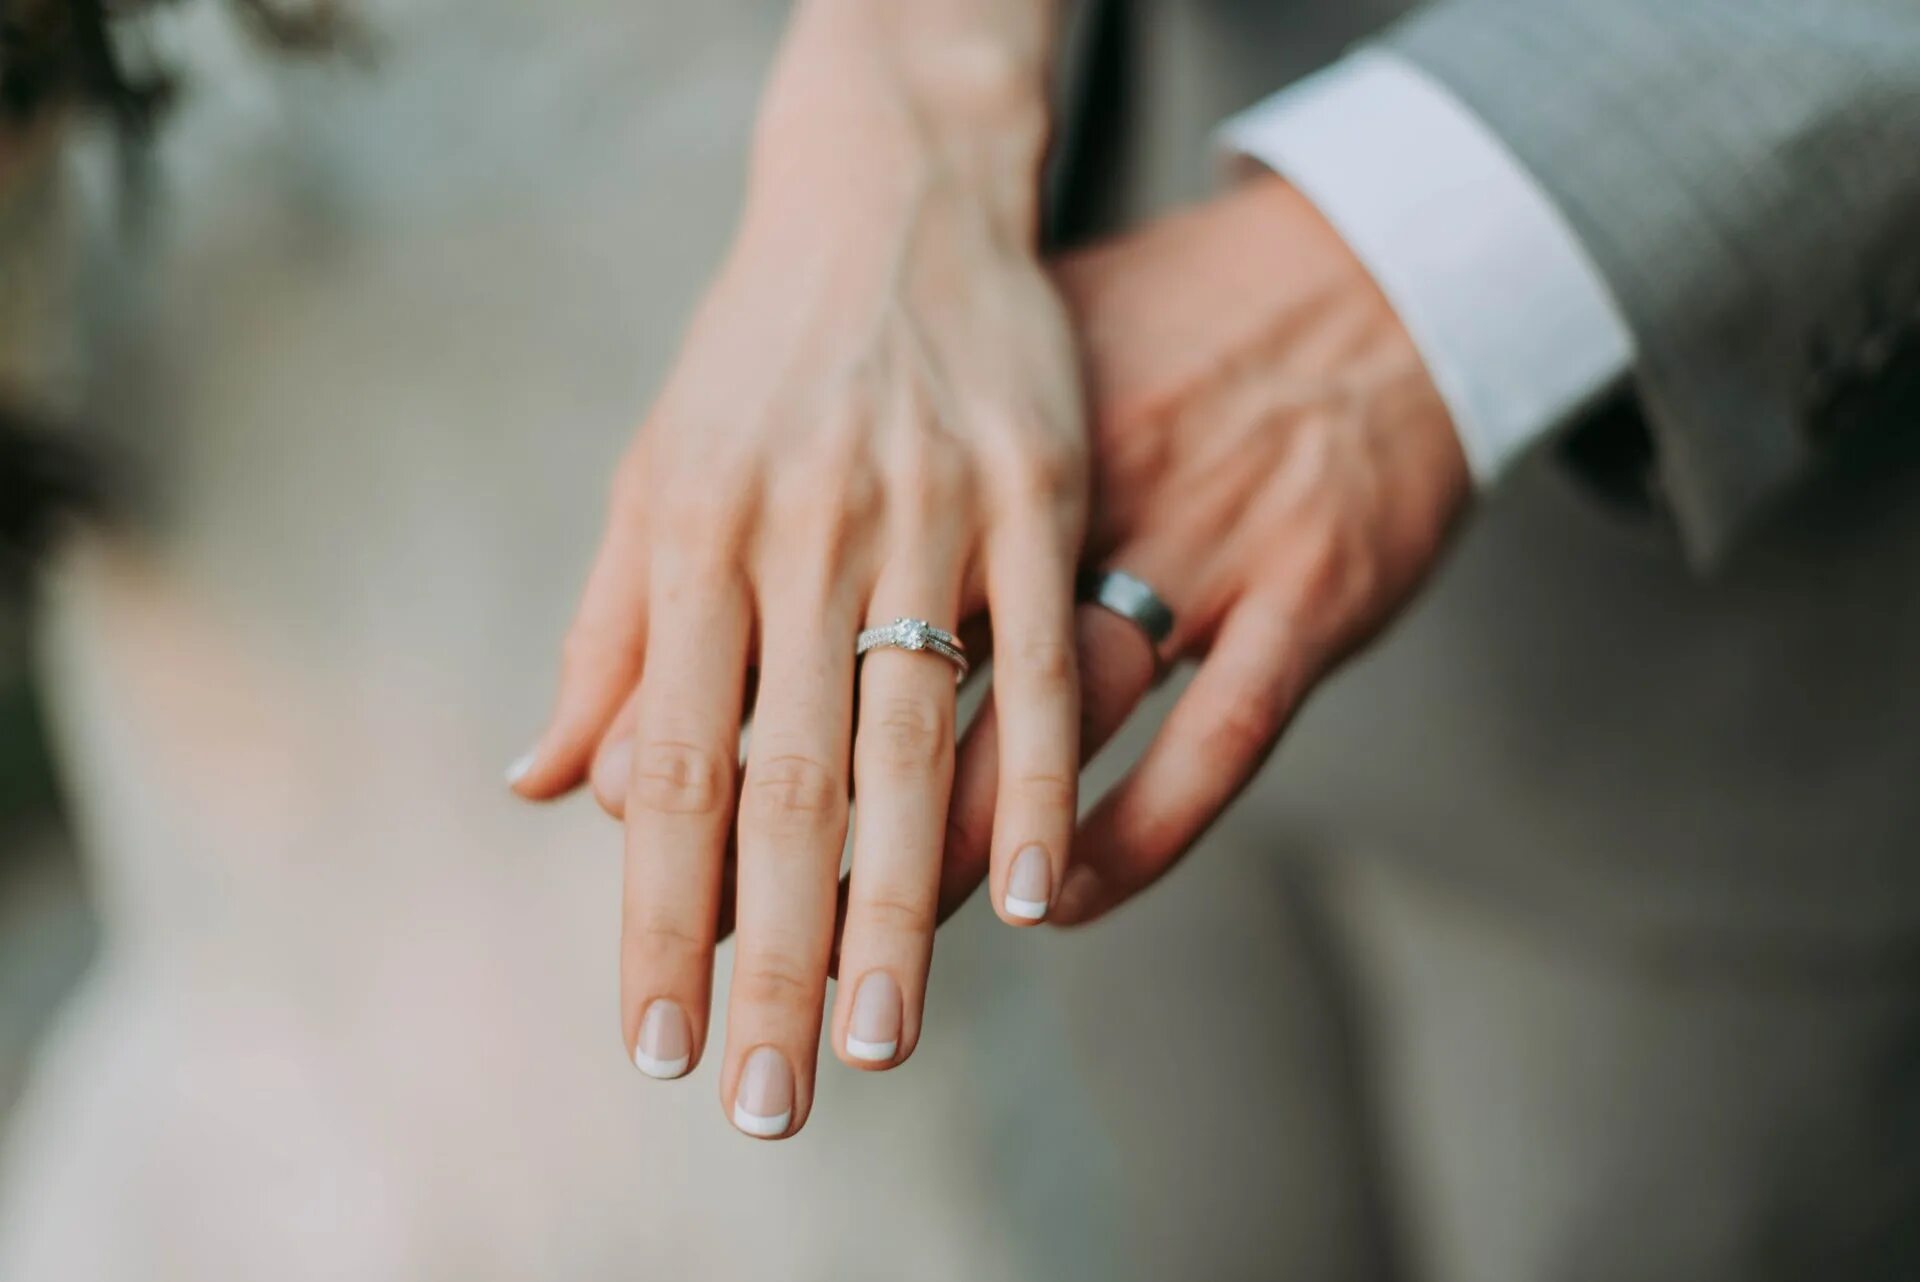 Брак. Обручальное кольцо. Обручальное кольцо на пальце. Обручальные кольца на руках.